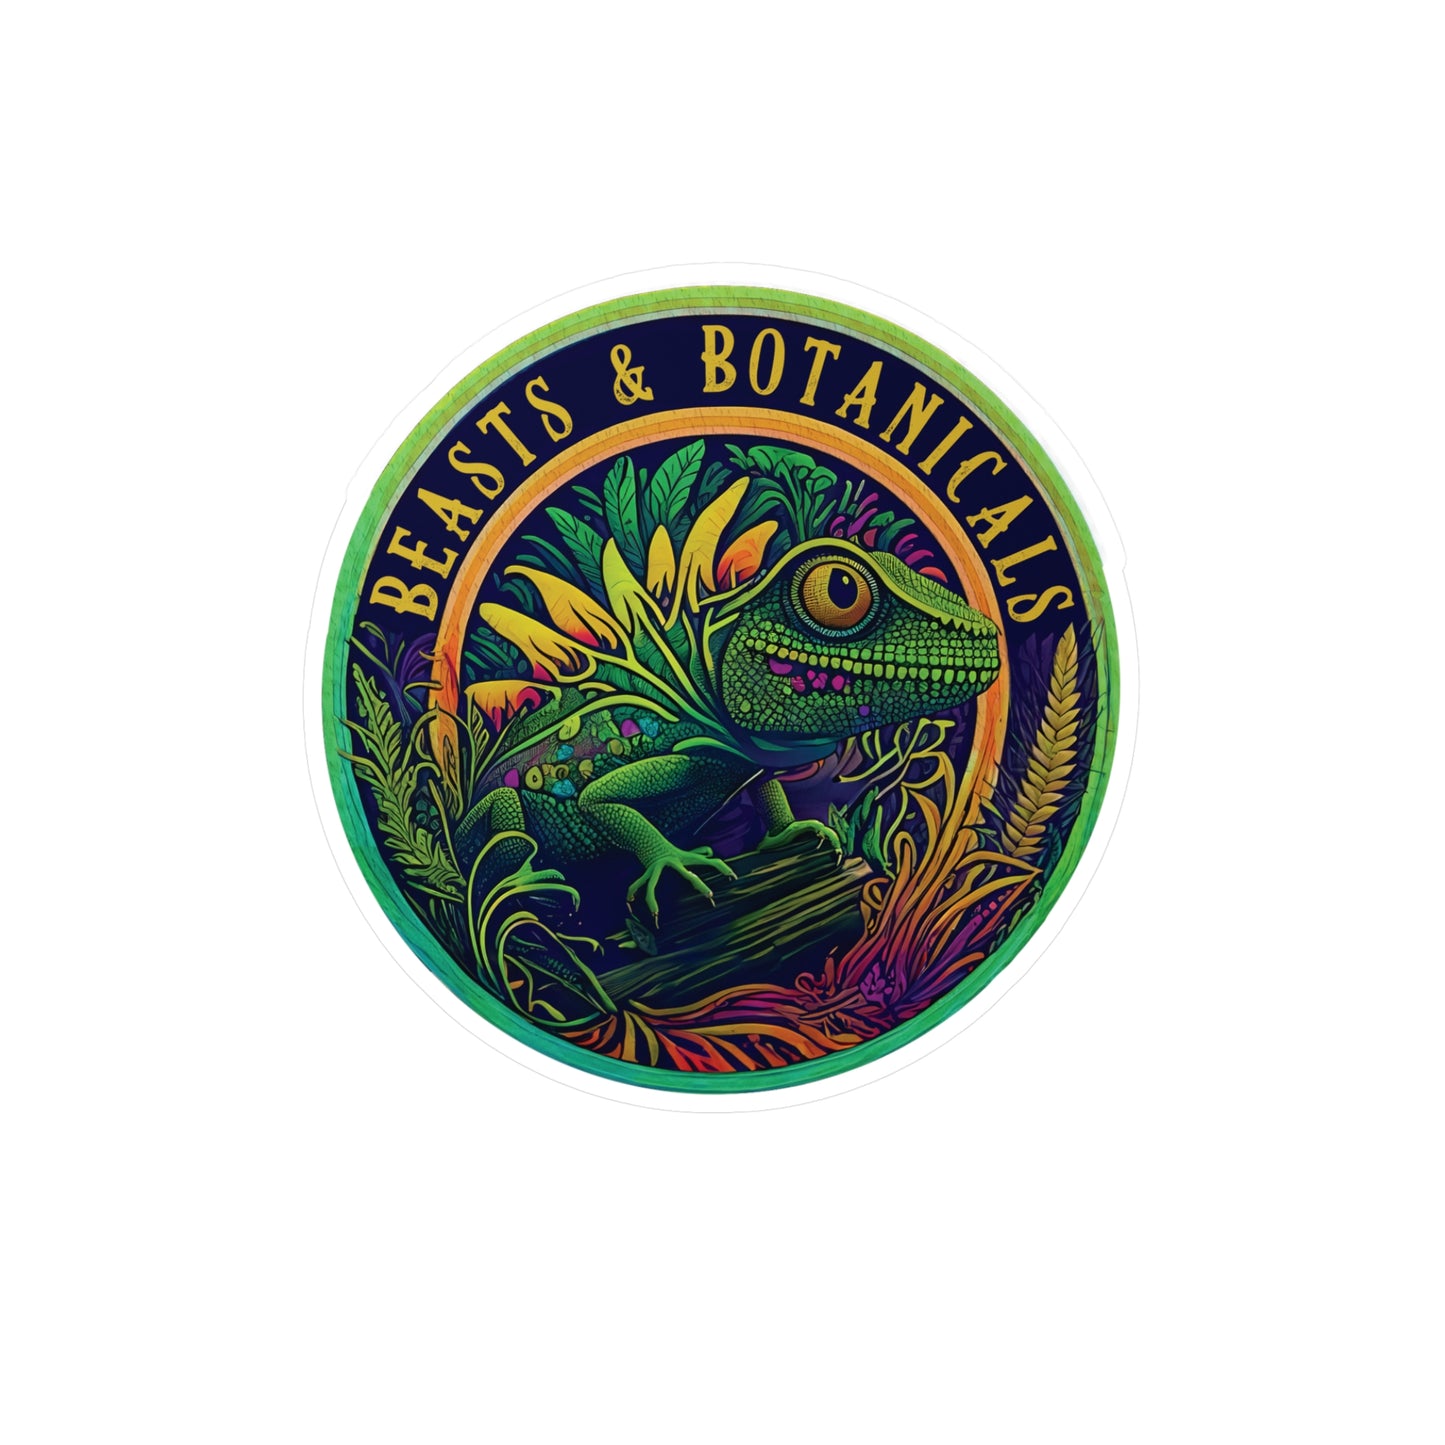 Beasts & Botanicals Vinyl Logo Sticker